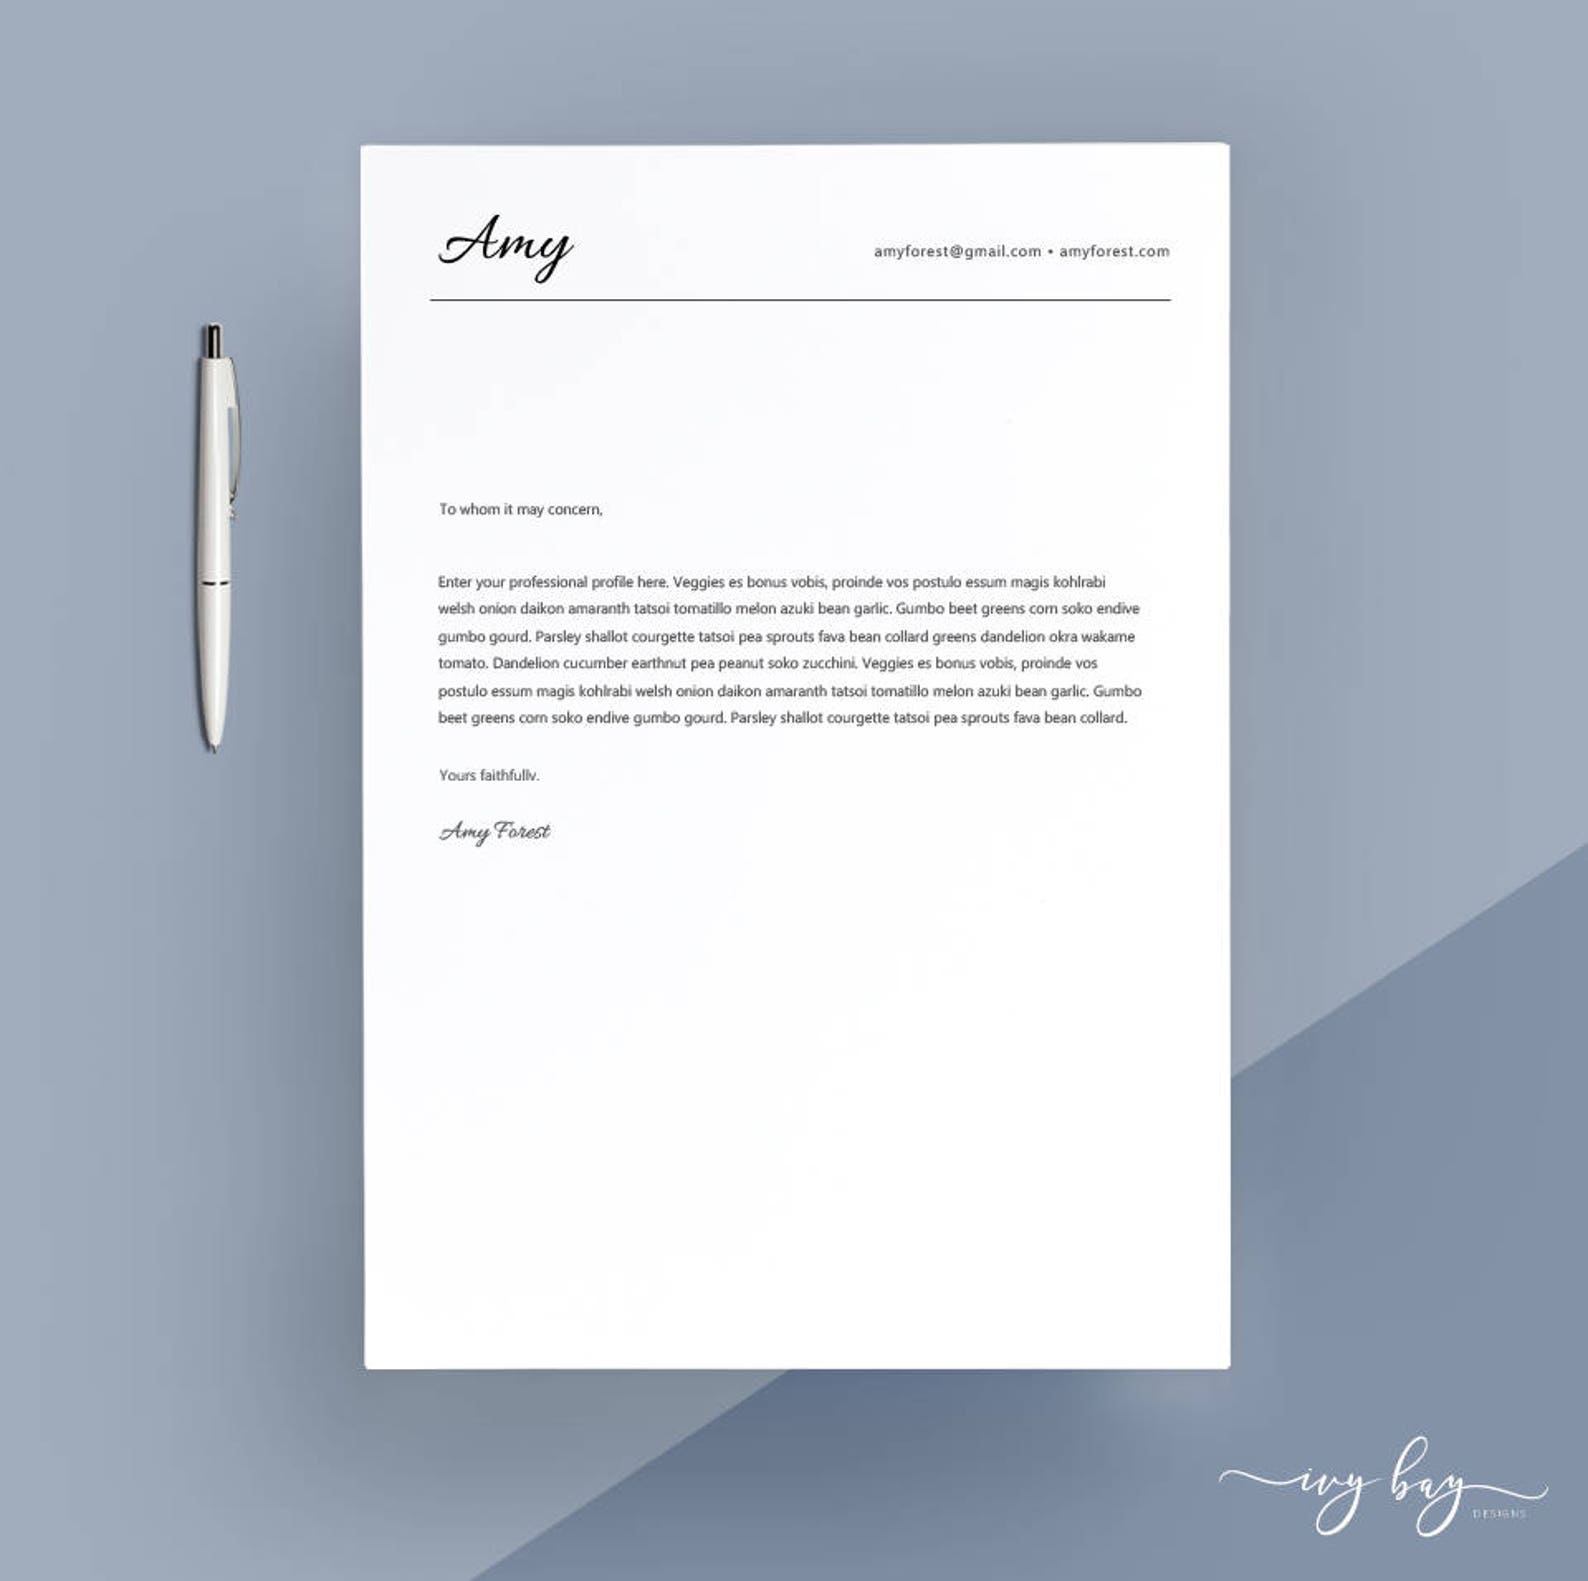 letterhead resume cover letter